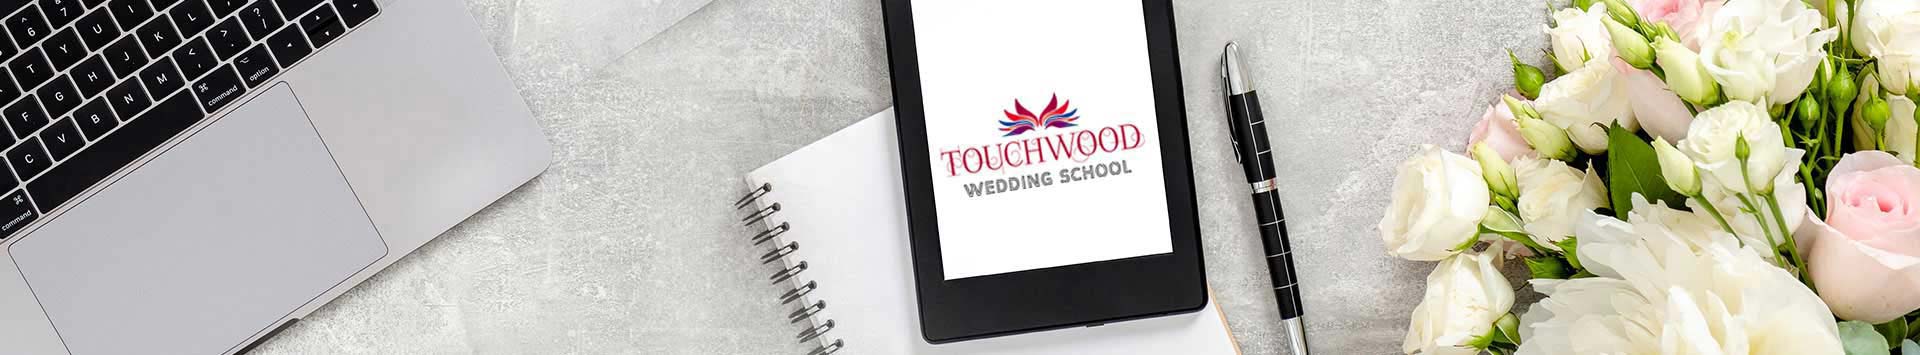 Touchwood Weddding School Registration Form